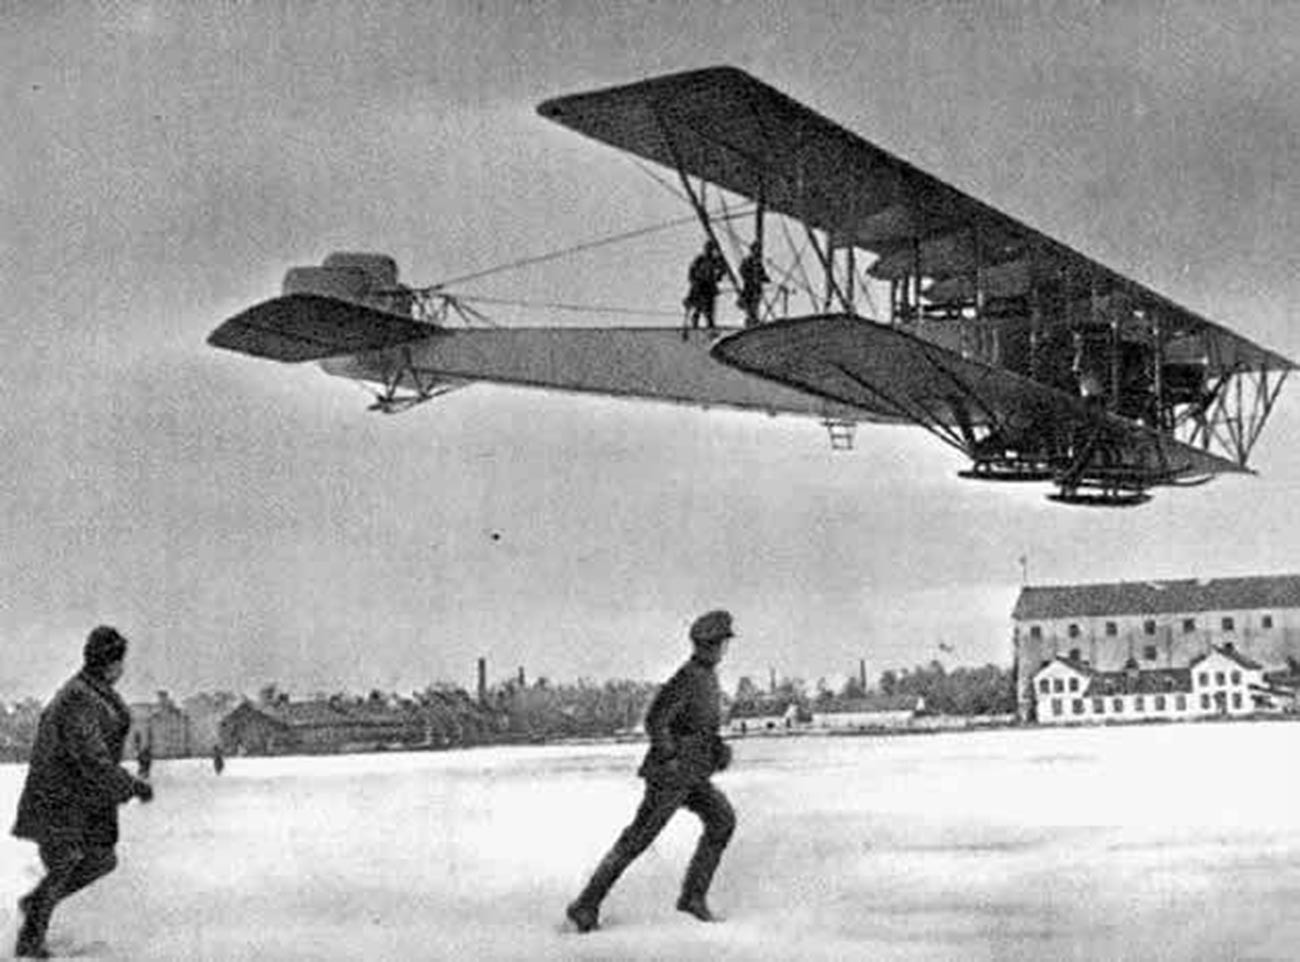 Il biplano da bombardamento quadrimotore “Ilja Muromets”
